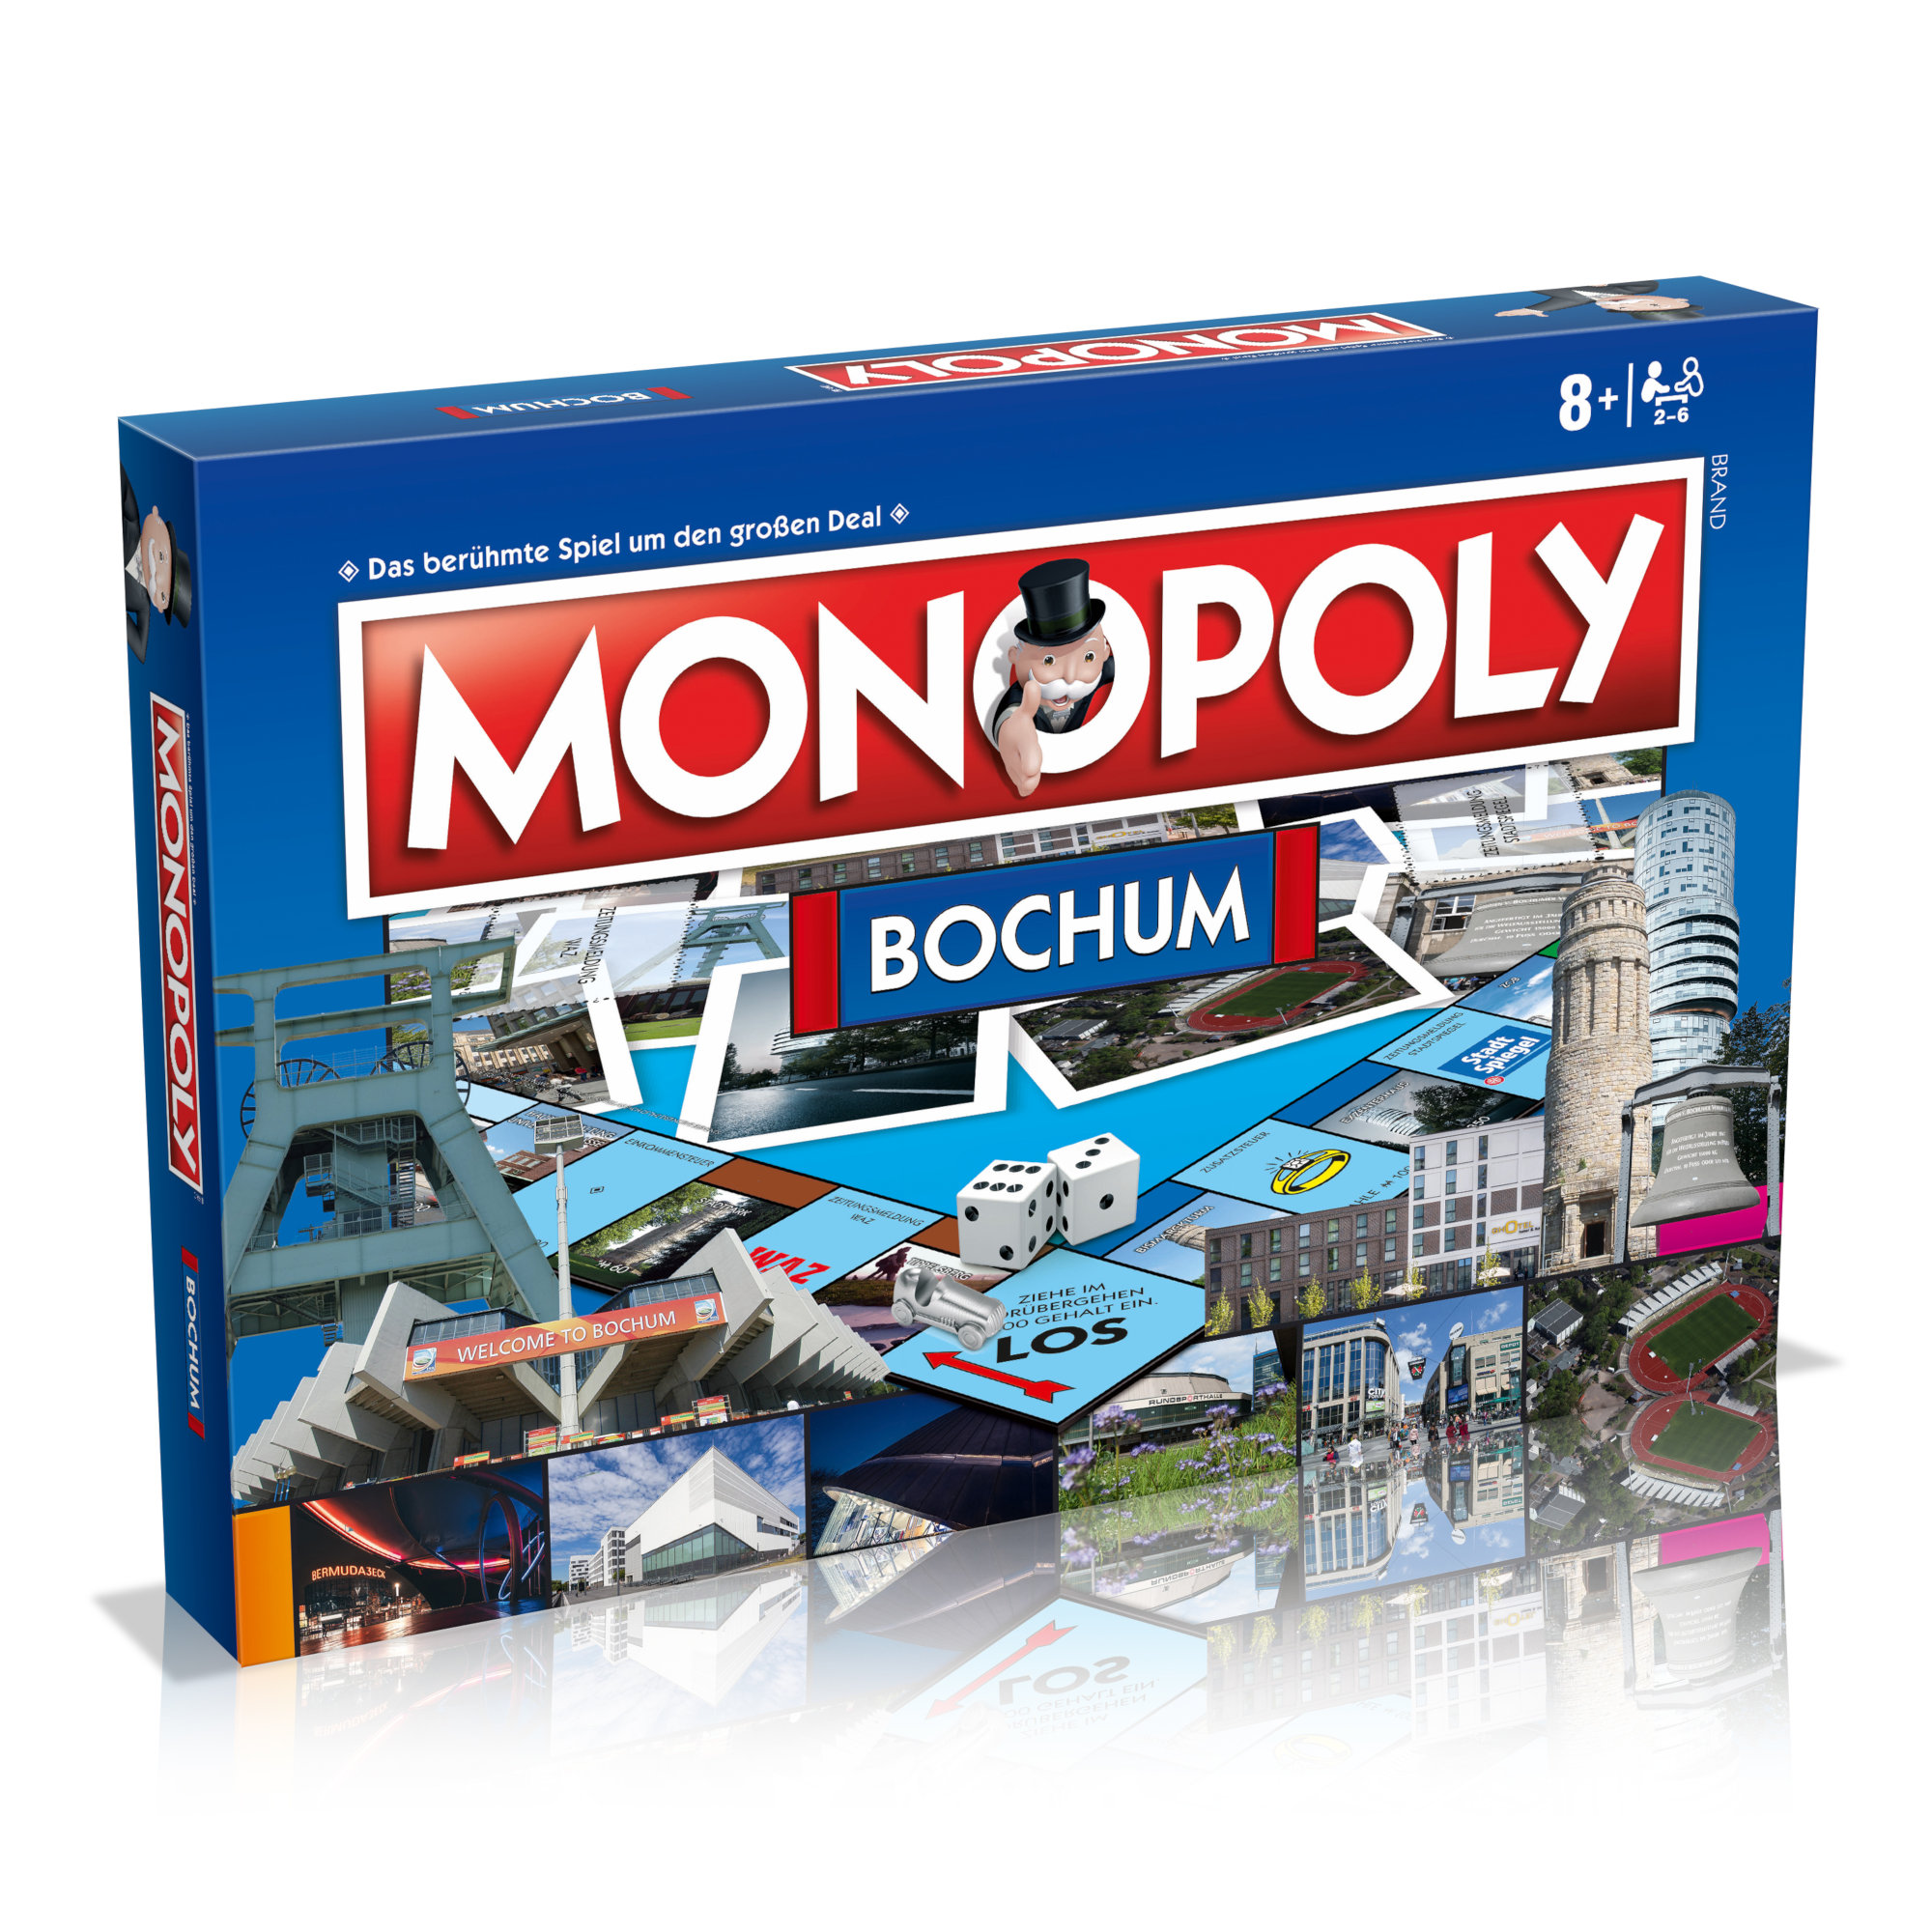 Bochum Monopoly